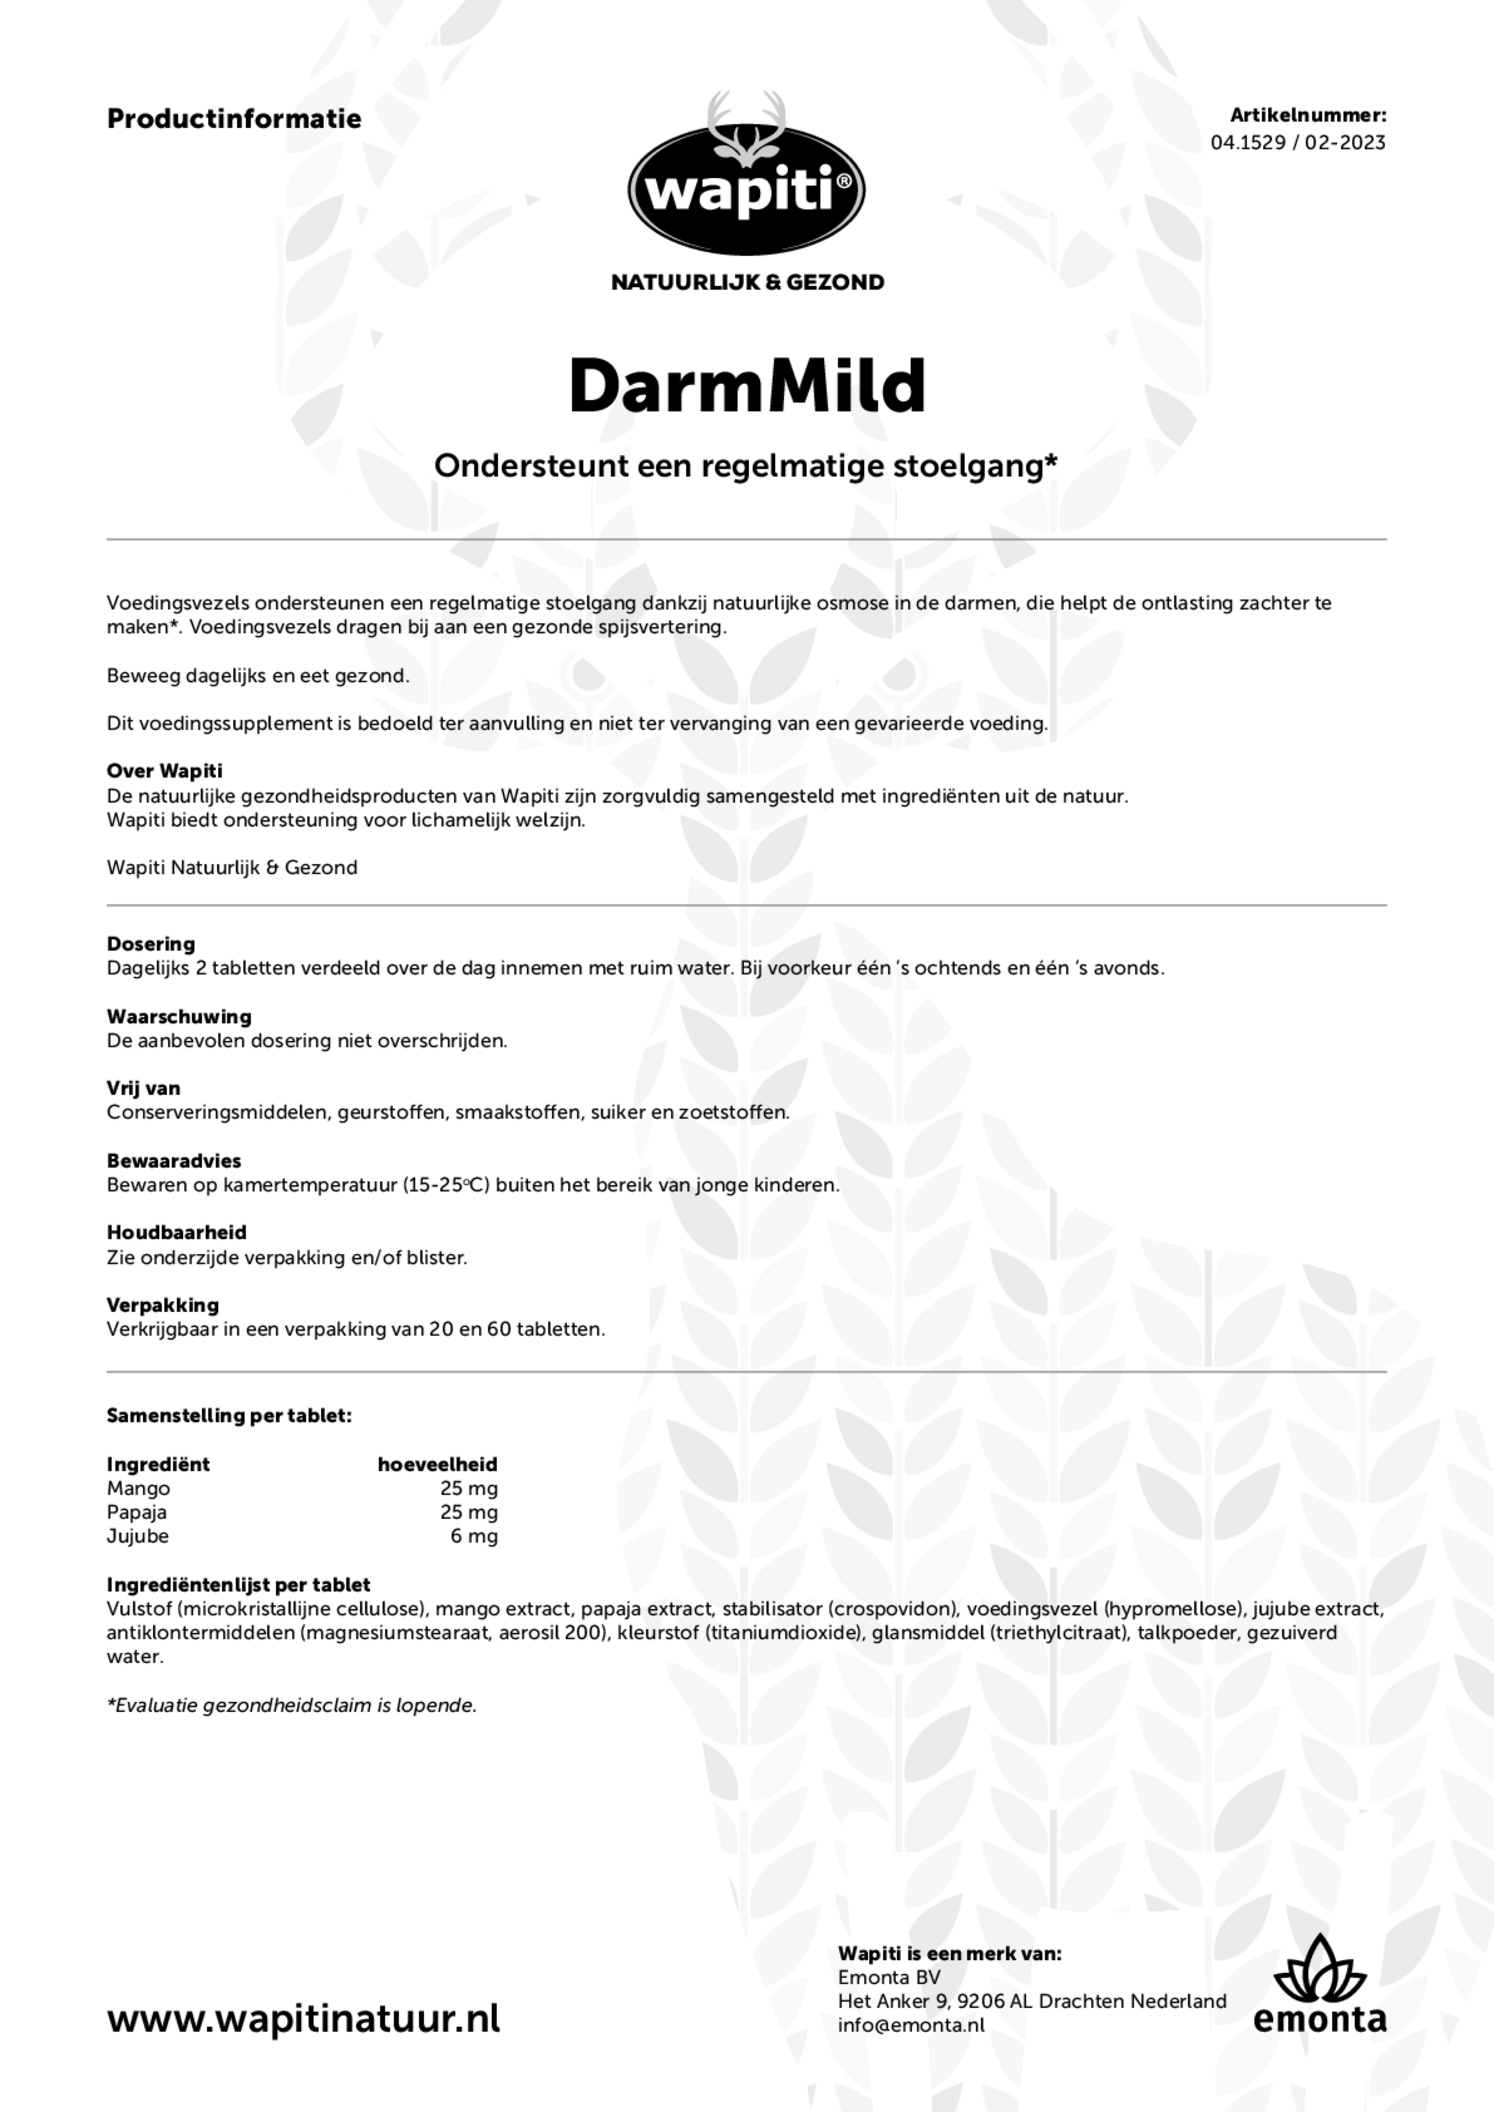 DarmMild Tabletten afbeelding van document #1, gebruiksaanwijzing